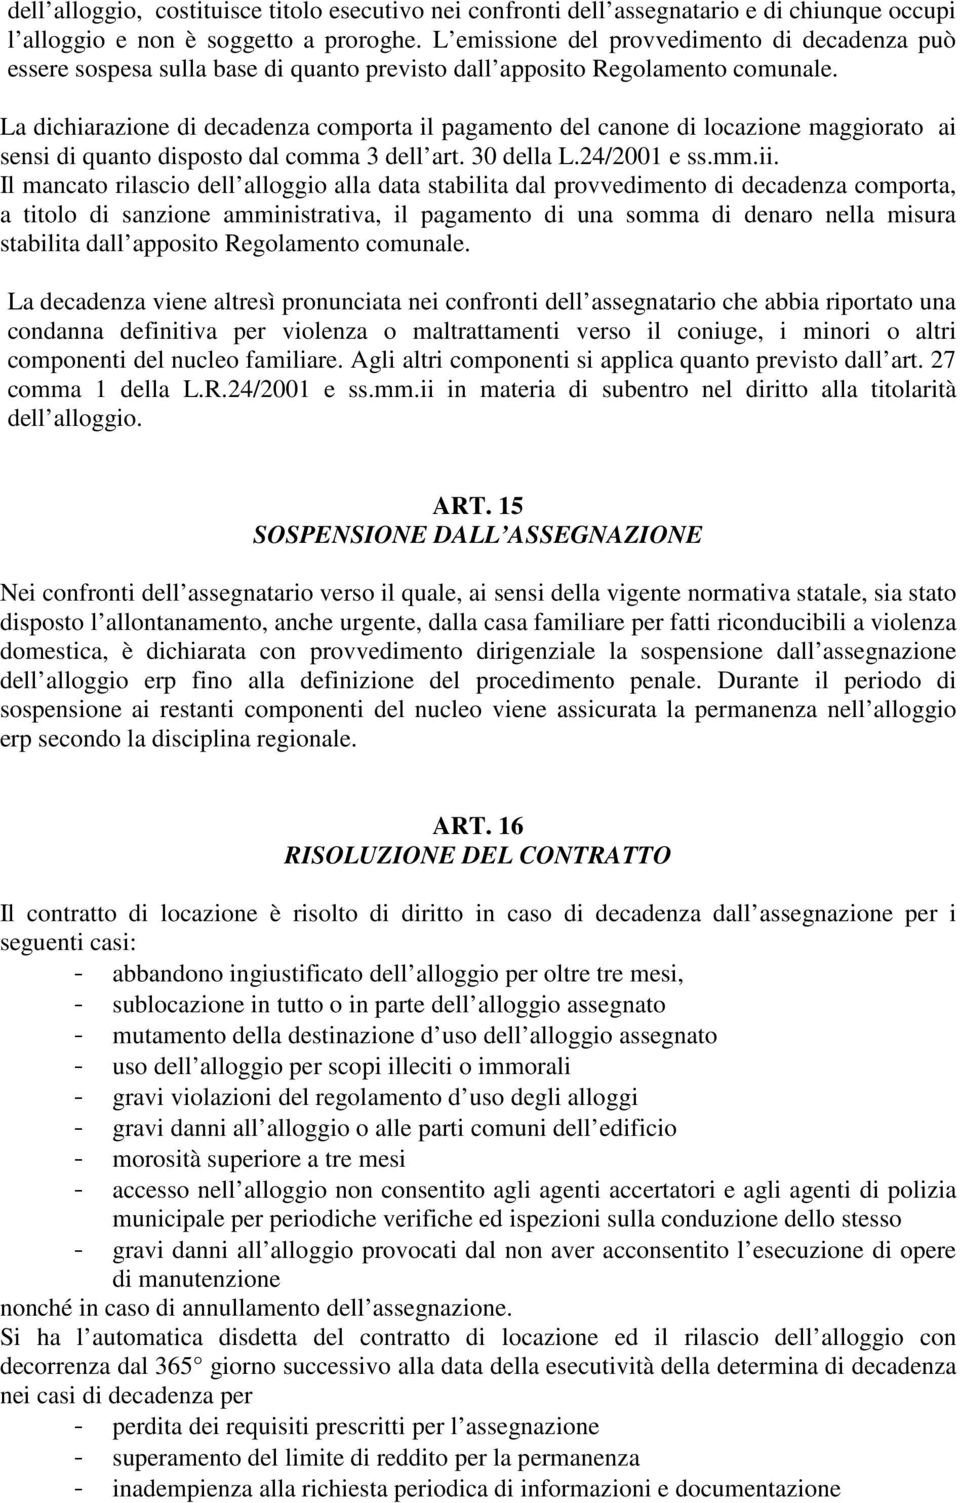 La dichiarazione di decadenza comporta il pagamento del canone di locazione maggiorato ai sensi di quanto disposto dal comma 3 dell art. 30 della L.24/2001 e ss.mm.ii.